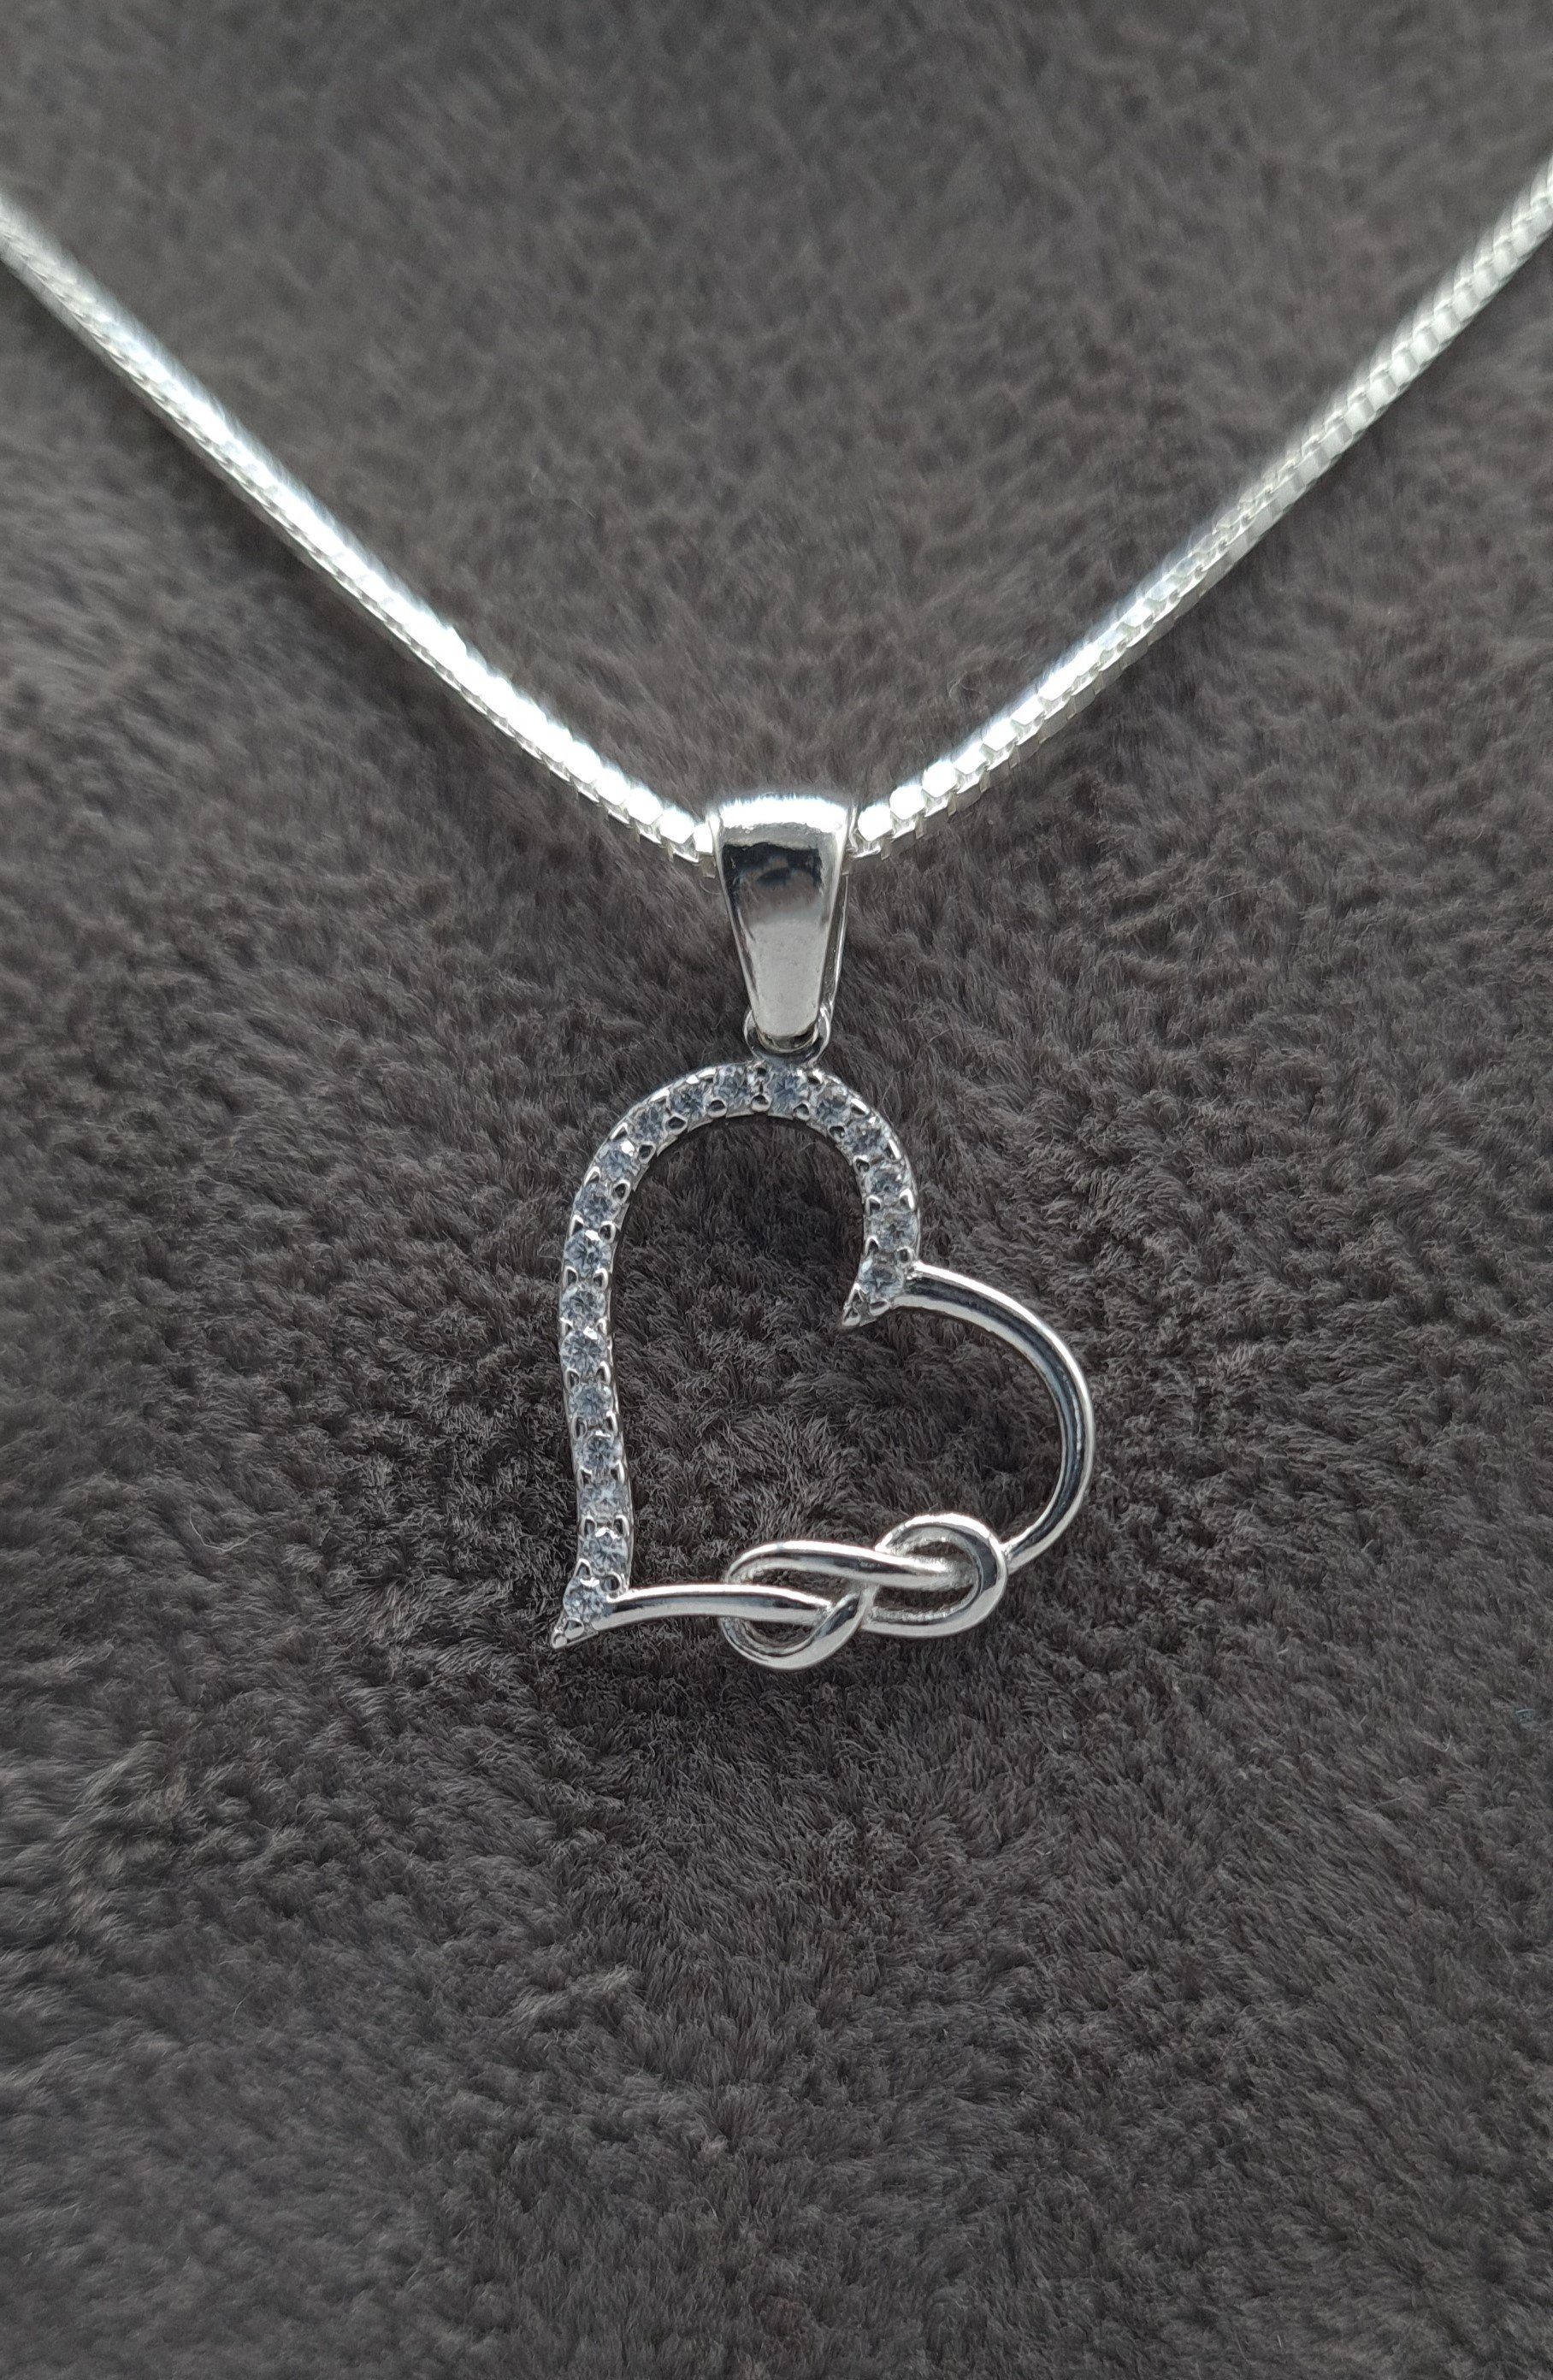 NAHLE Kette mit Anhänger Silberkette Herz Unendlichkeit Infinity Halskette, 925 Silber Anhänger mit Zirkonia - rhodiniert